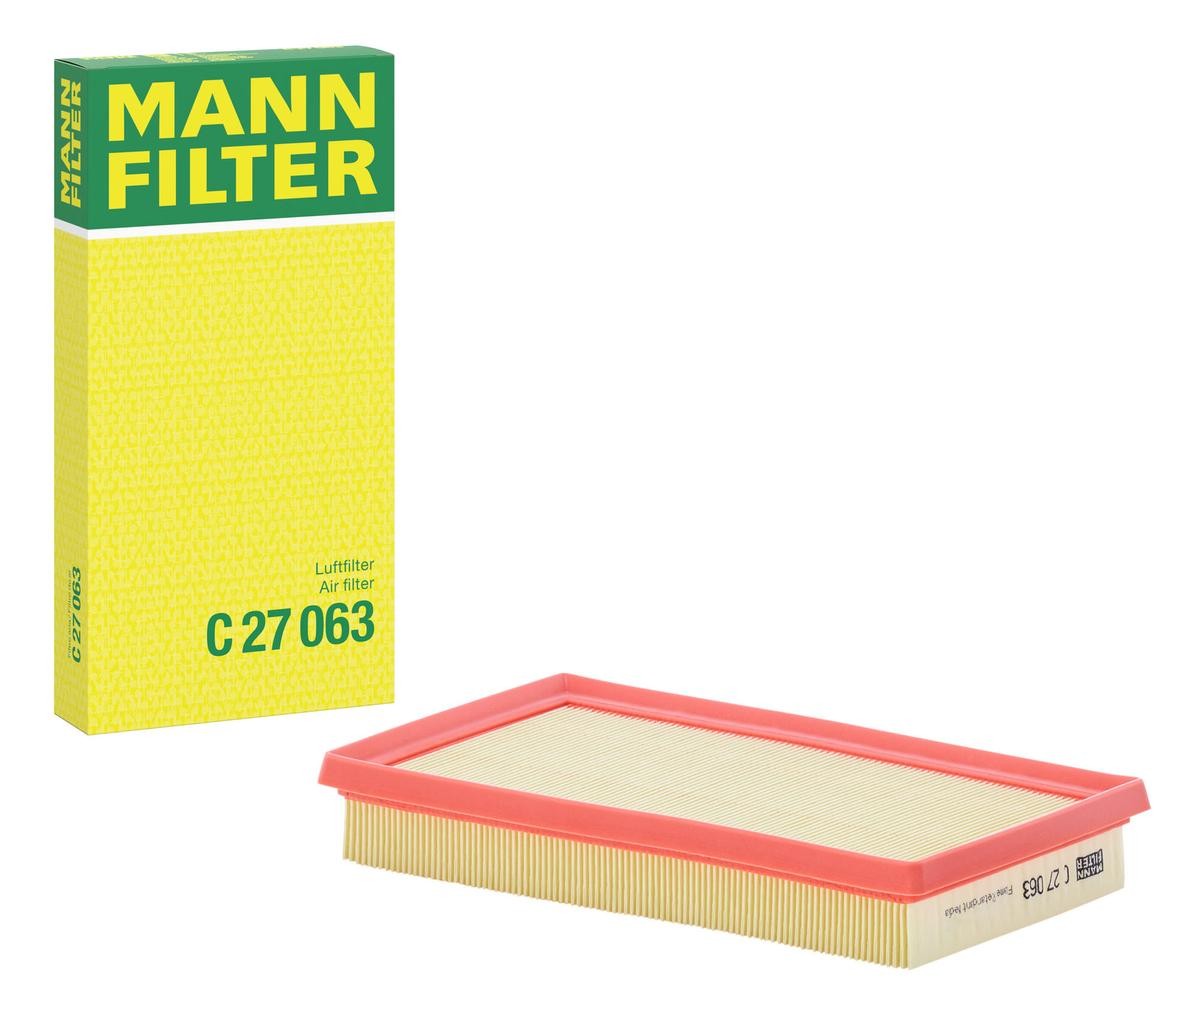 Original MANN-FILTER Air filters C 27 063 for SUZUKI ACROSS